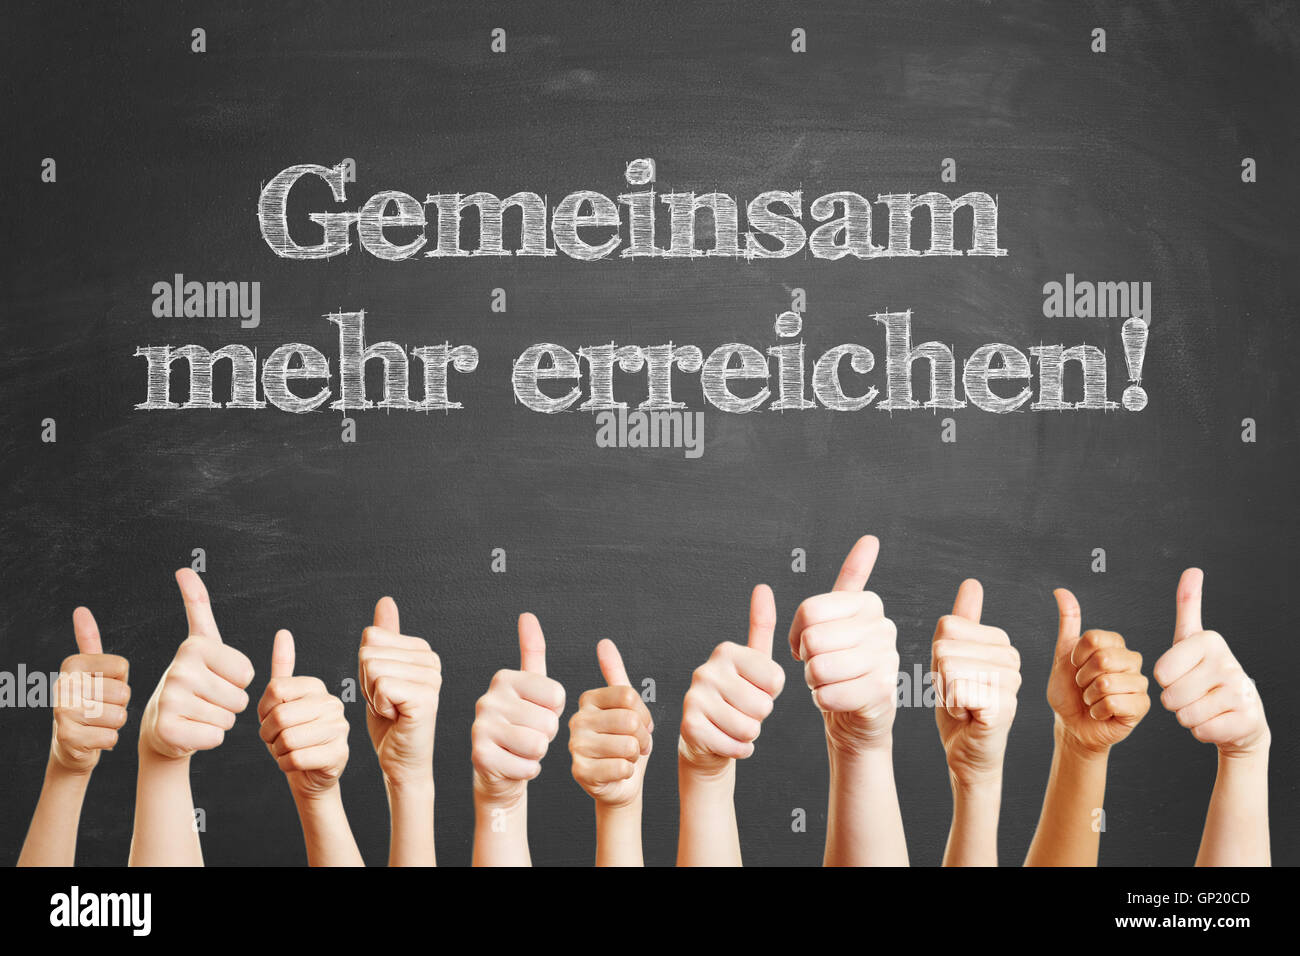 German slogan 'Gemeinsam mehr erreichen' (Together we achieve more) on chalkboard Stock Photo